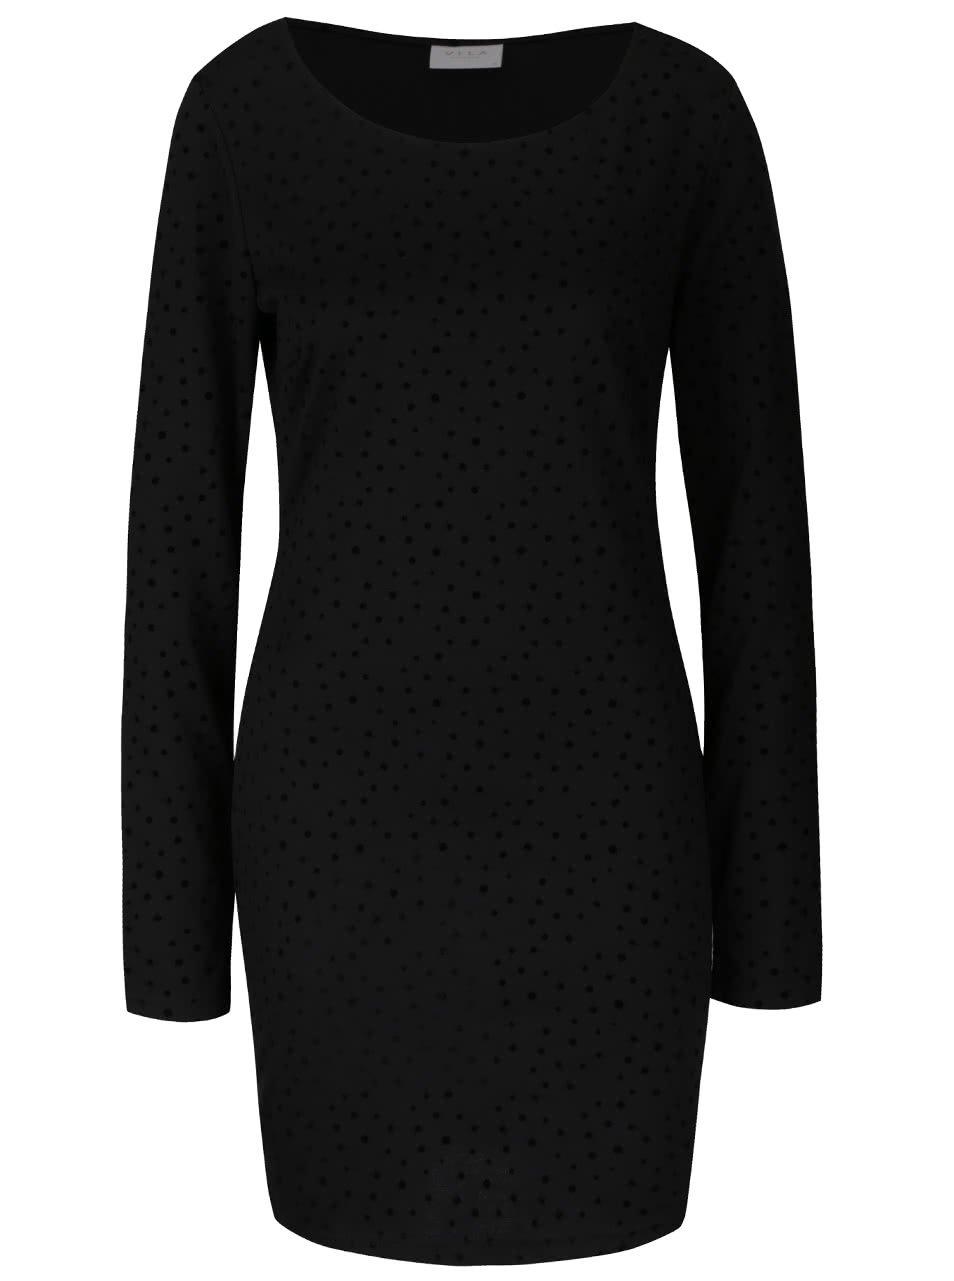 Černé šaty s plastickými puntíky VILA Tinny